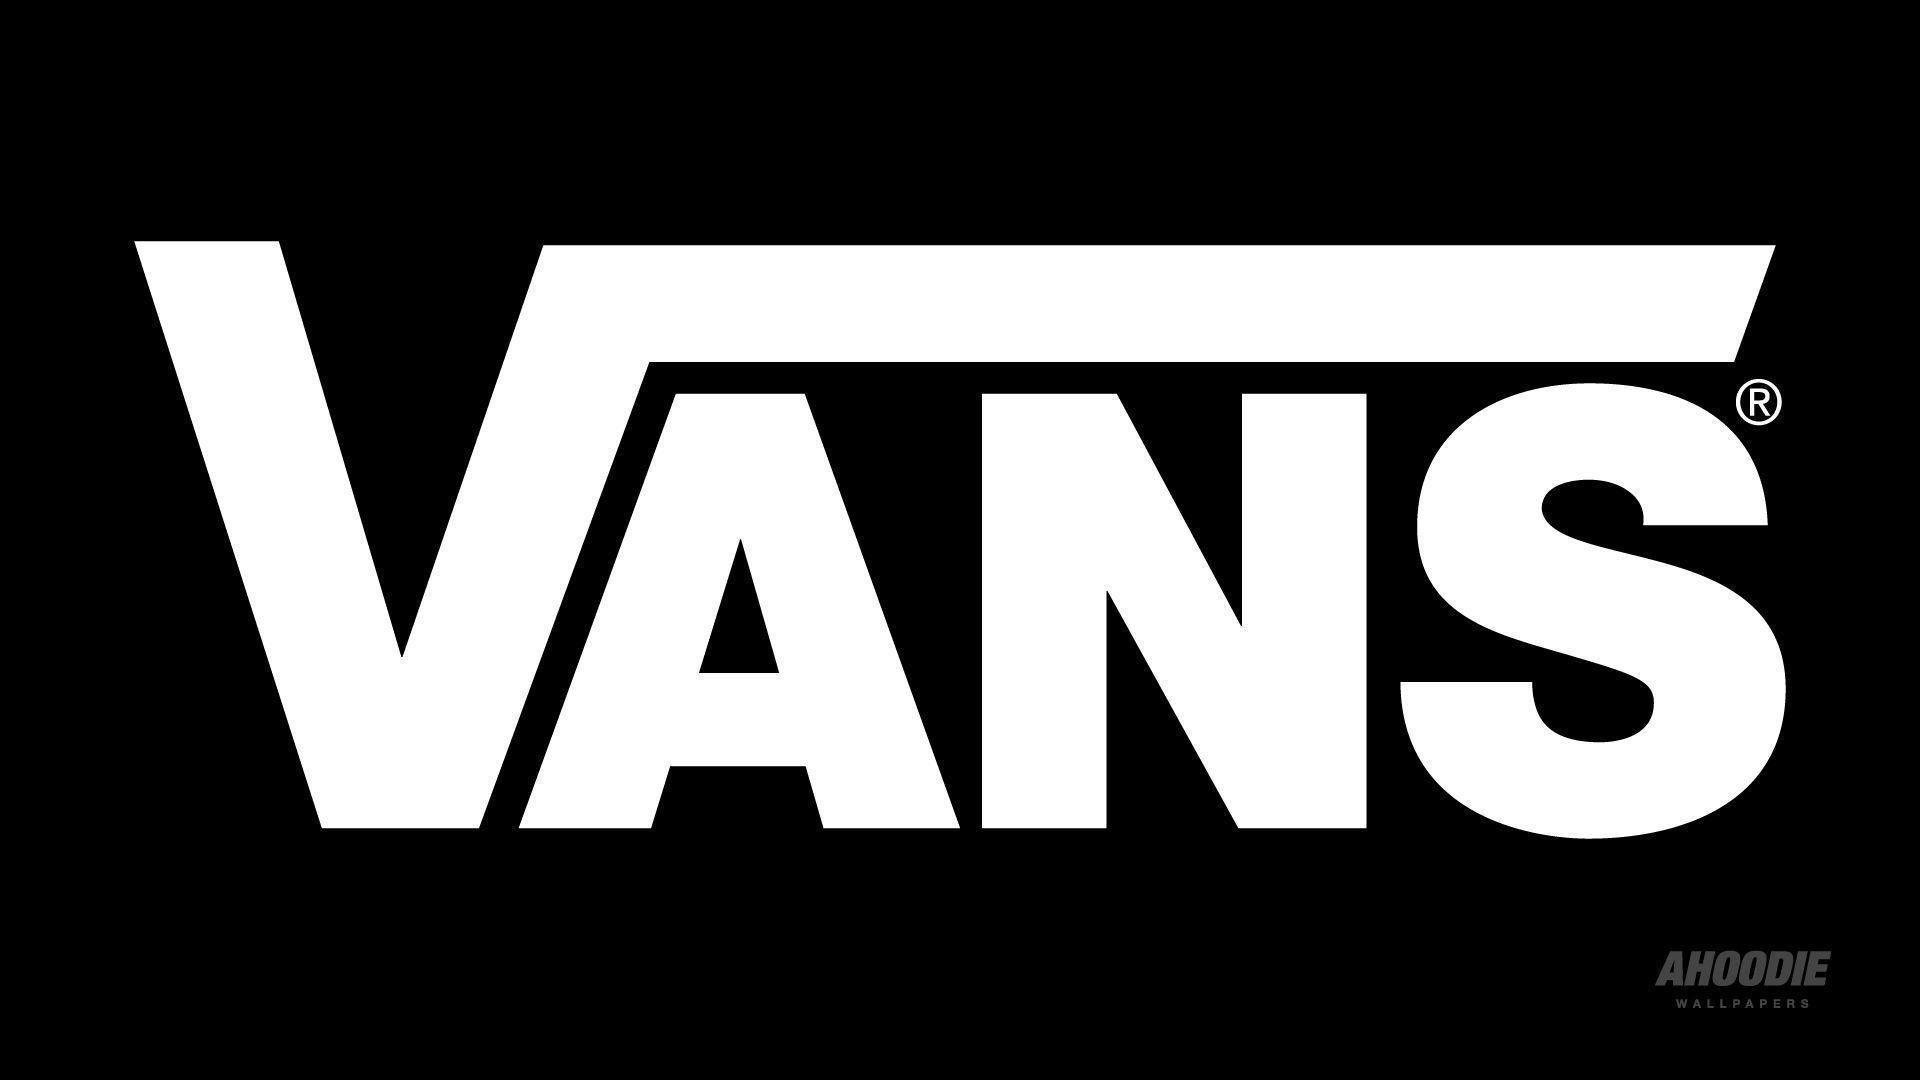 Cat Vans Logo - vans logo | HD Wallpapers | Editable in 2019 | Fond ecrant